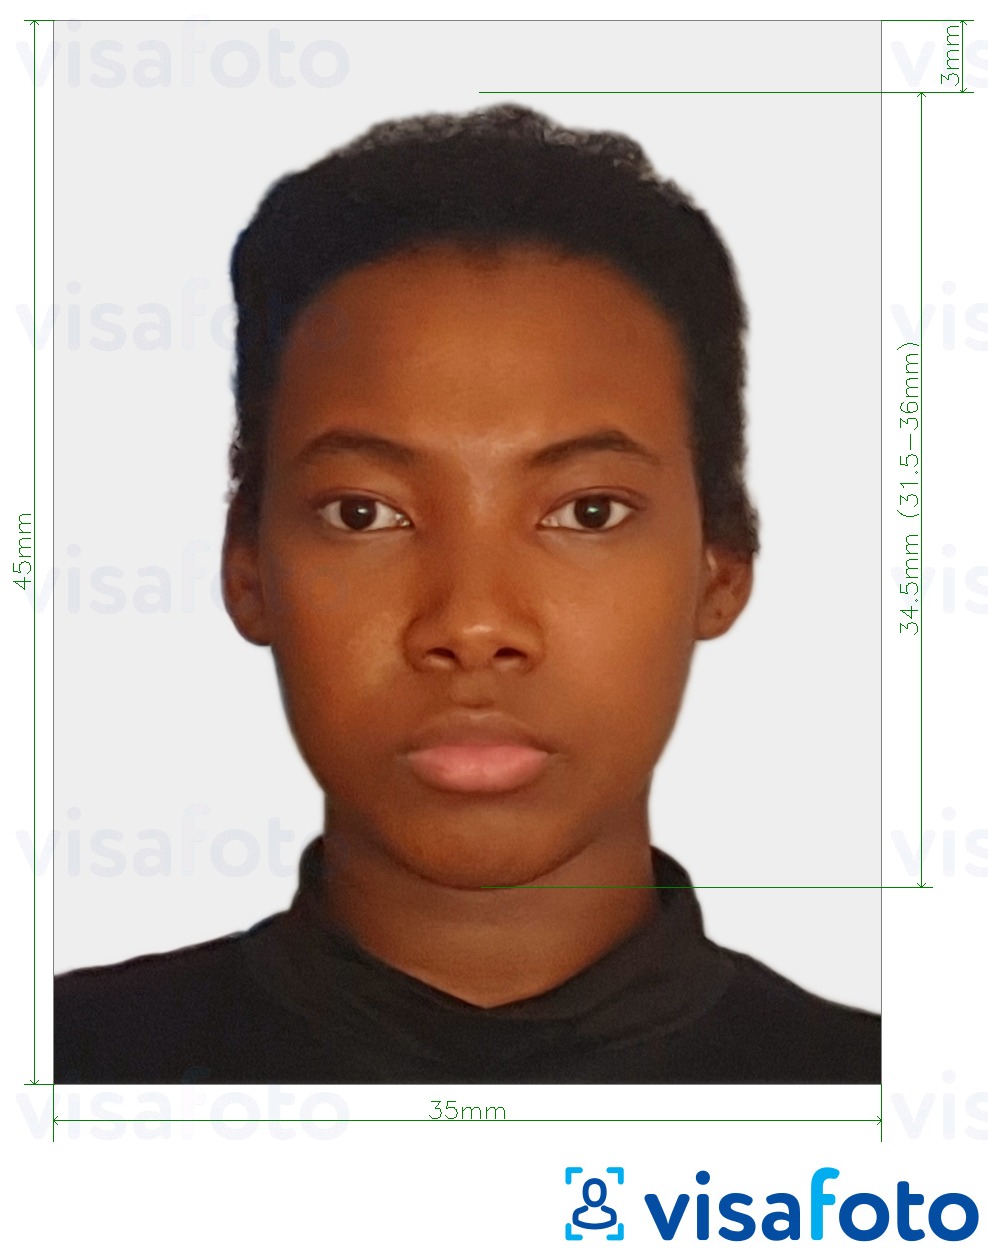  Saint Kitts va Nevis pasport fotosurati 35x45 mm (1.77x1.38 dyuym) uchun rasm namunasi zaruriy hajm xususiyatlariga ega